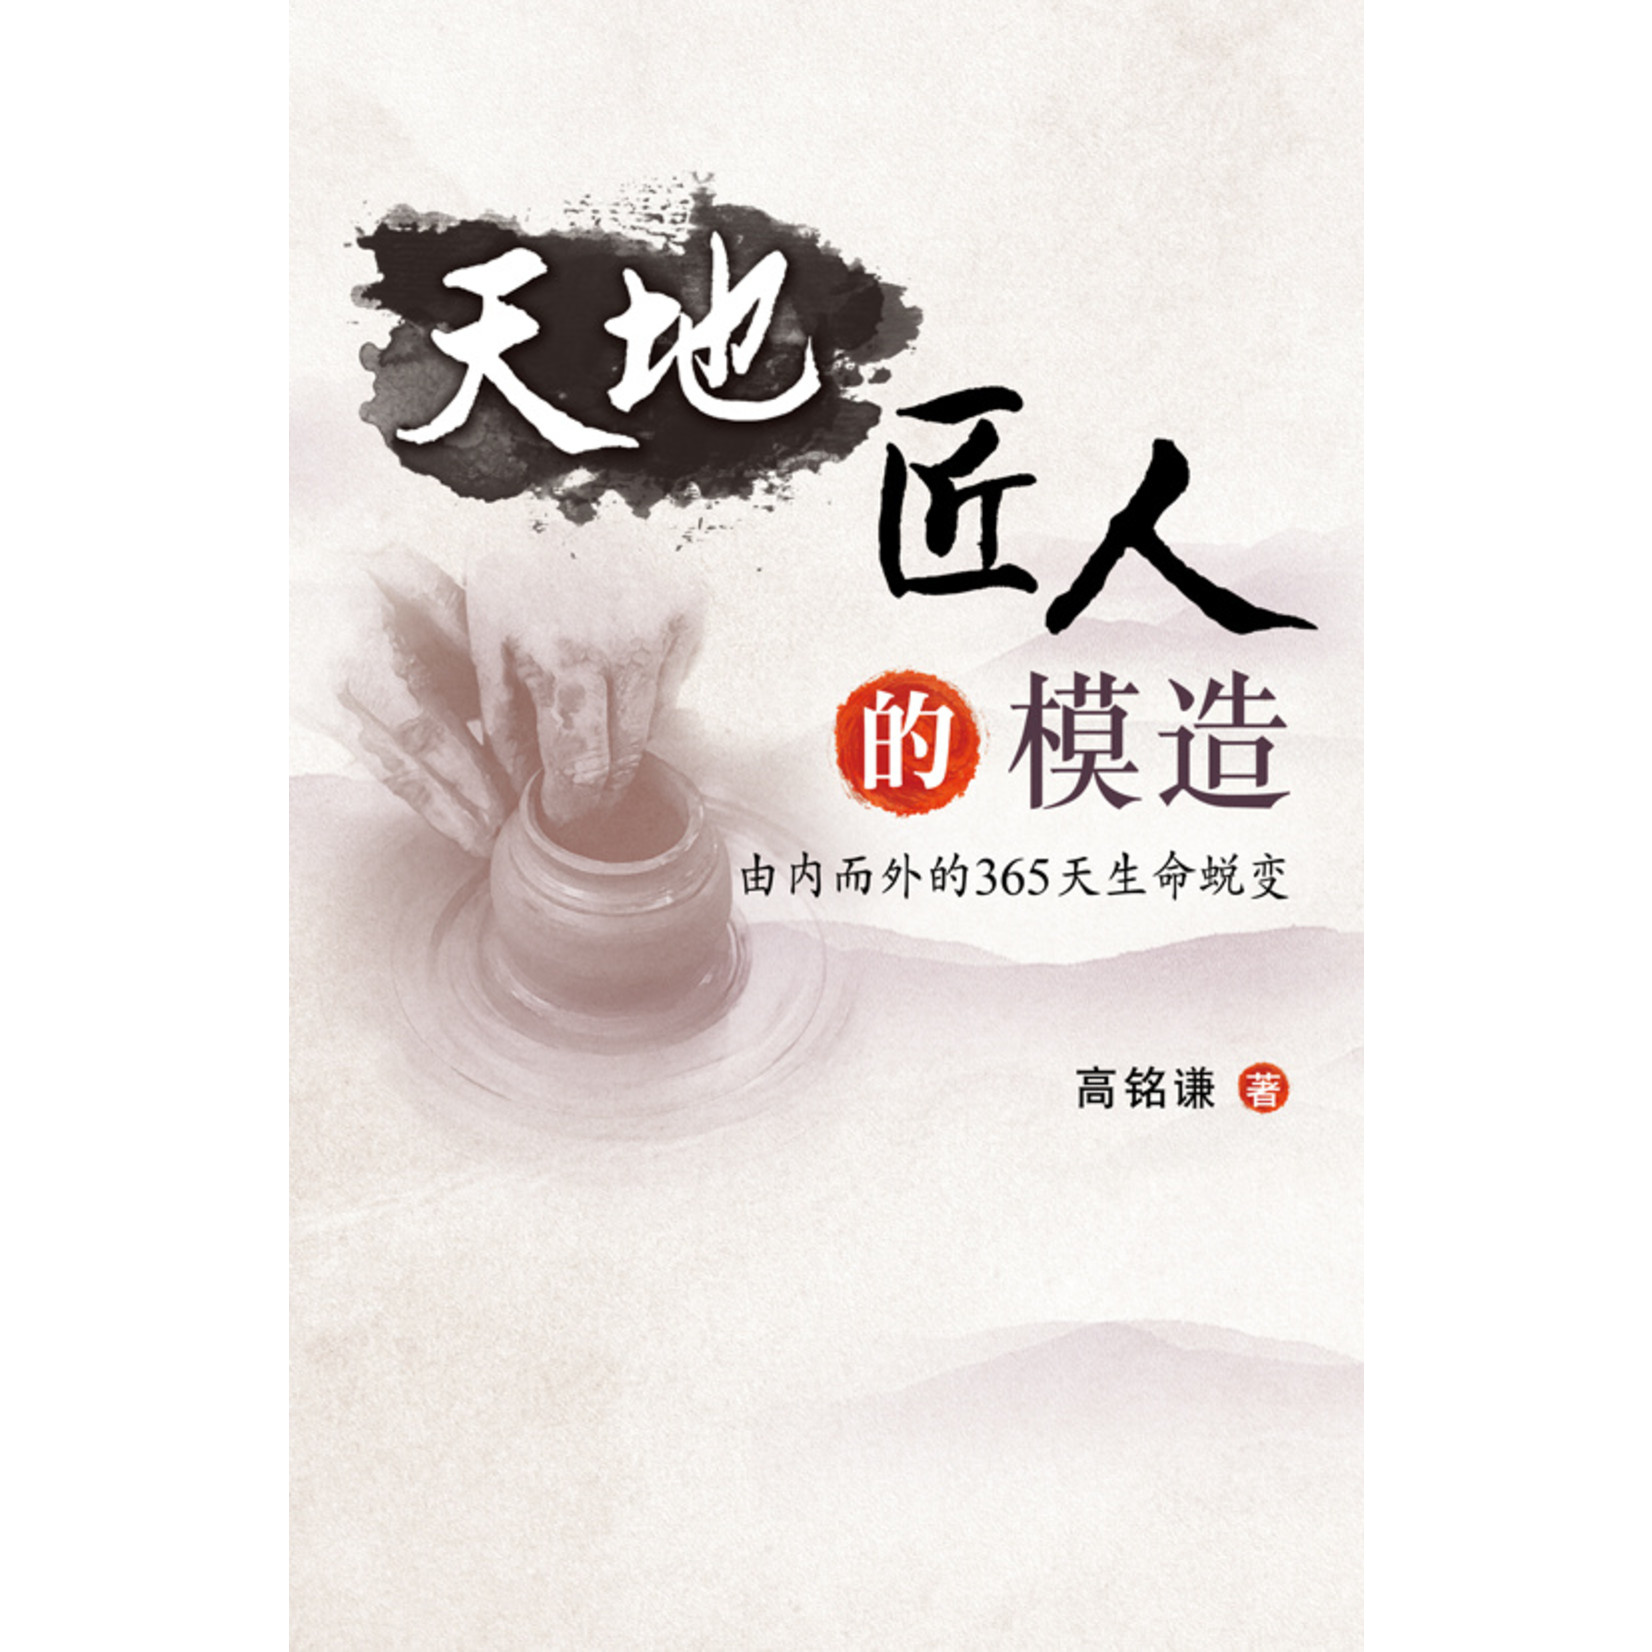 天道書樓 Tien Dao Publishing House 天地匠人的模造：由內至外的365天生命蛻變（ 聖召出聖徒簡體版）